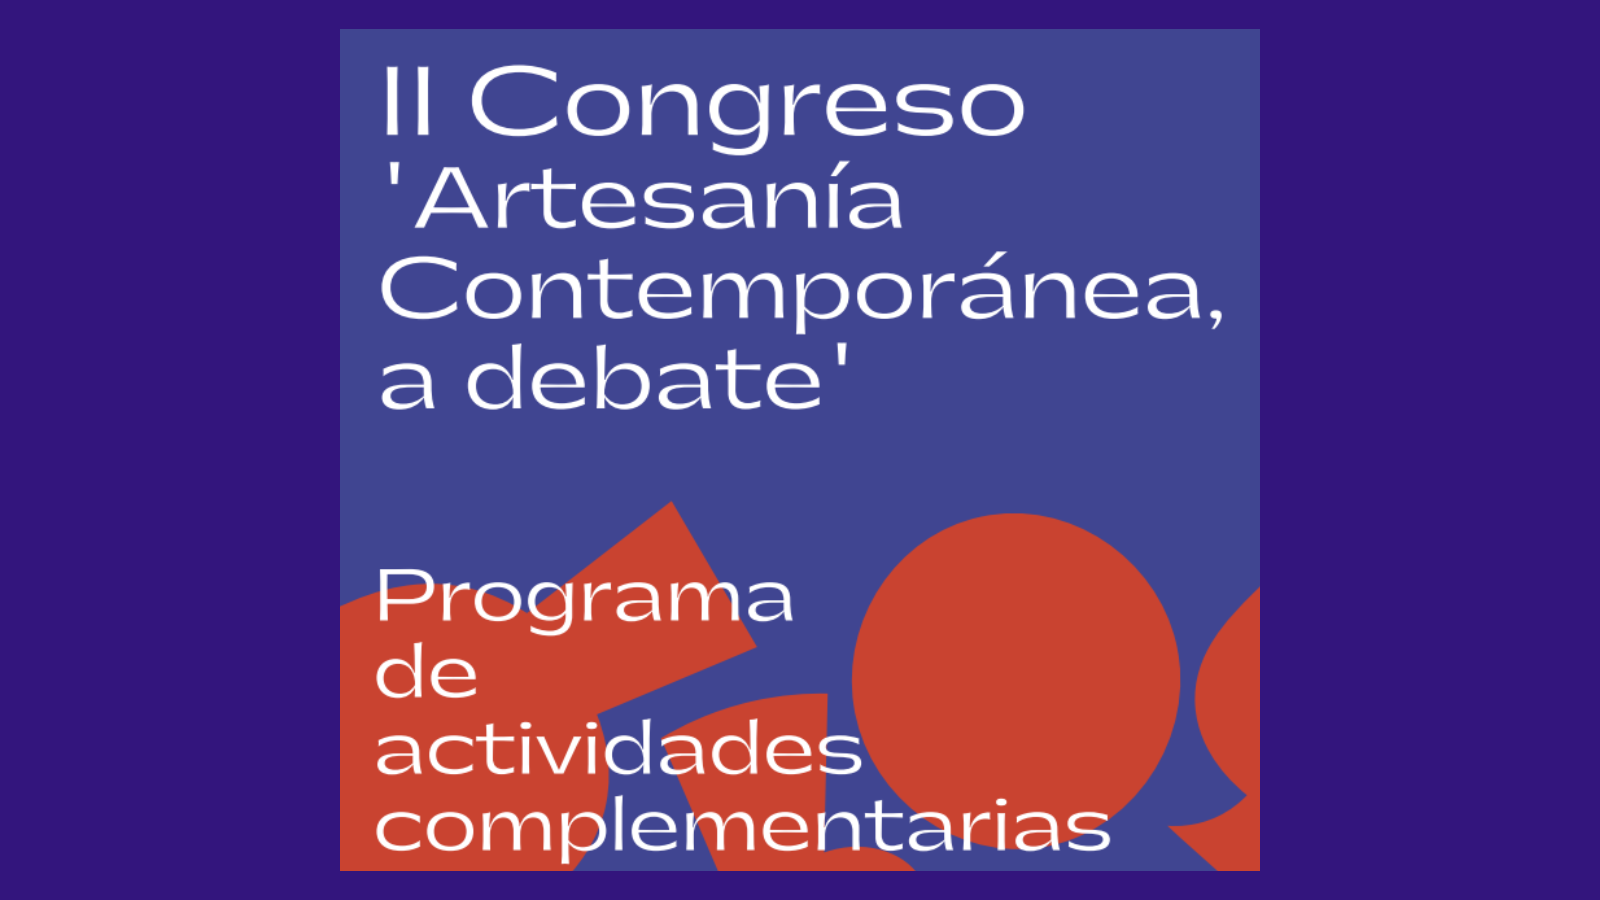 Cartel del programa de actividades complementarias del II Congreso de Artesanía contemporánea, con letras en blanco y dibujos en naranja sobre fondo azul oscuro